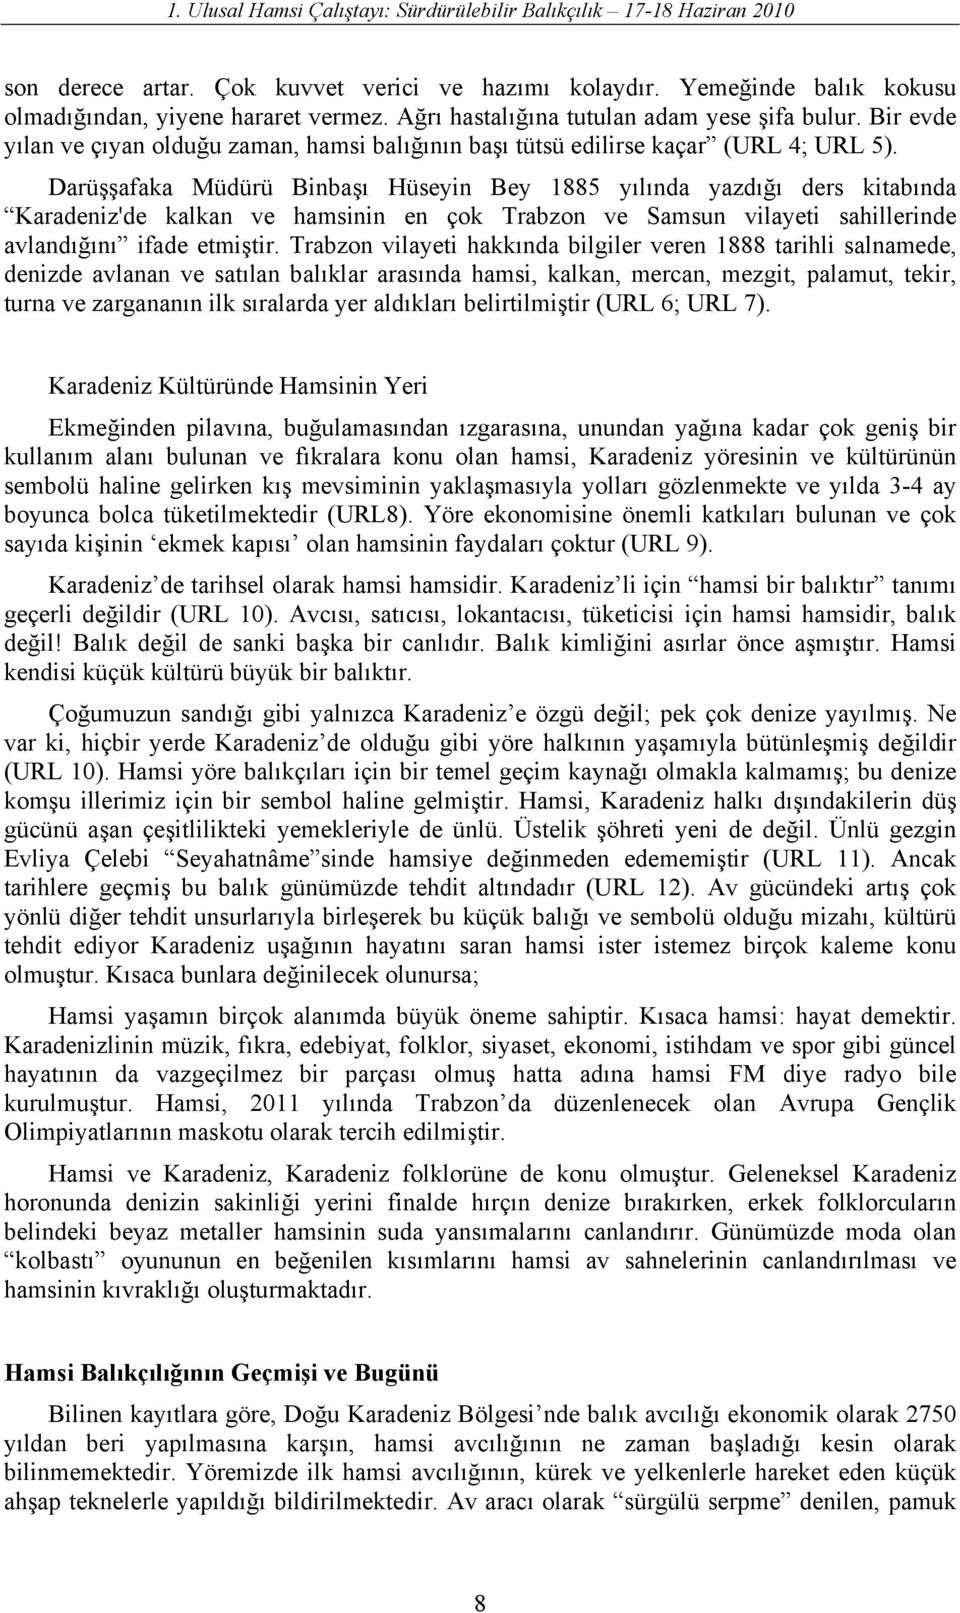 Darüşşafaka Müdürü Binbaşı Hüseyin Bey 1885 yılında yazdığı ders kitabında Karadeniz'de kalkan ve hamsinin en çok Trabzon ve Samsun vilayeti sahillerinde avlandığını ifade etmiştir.